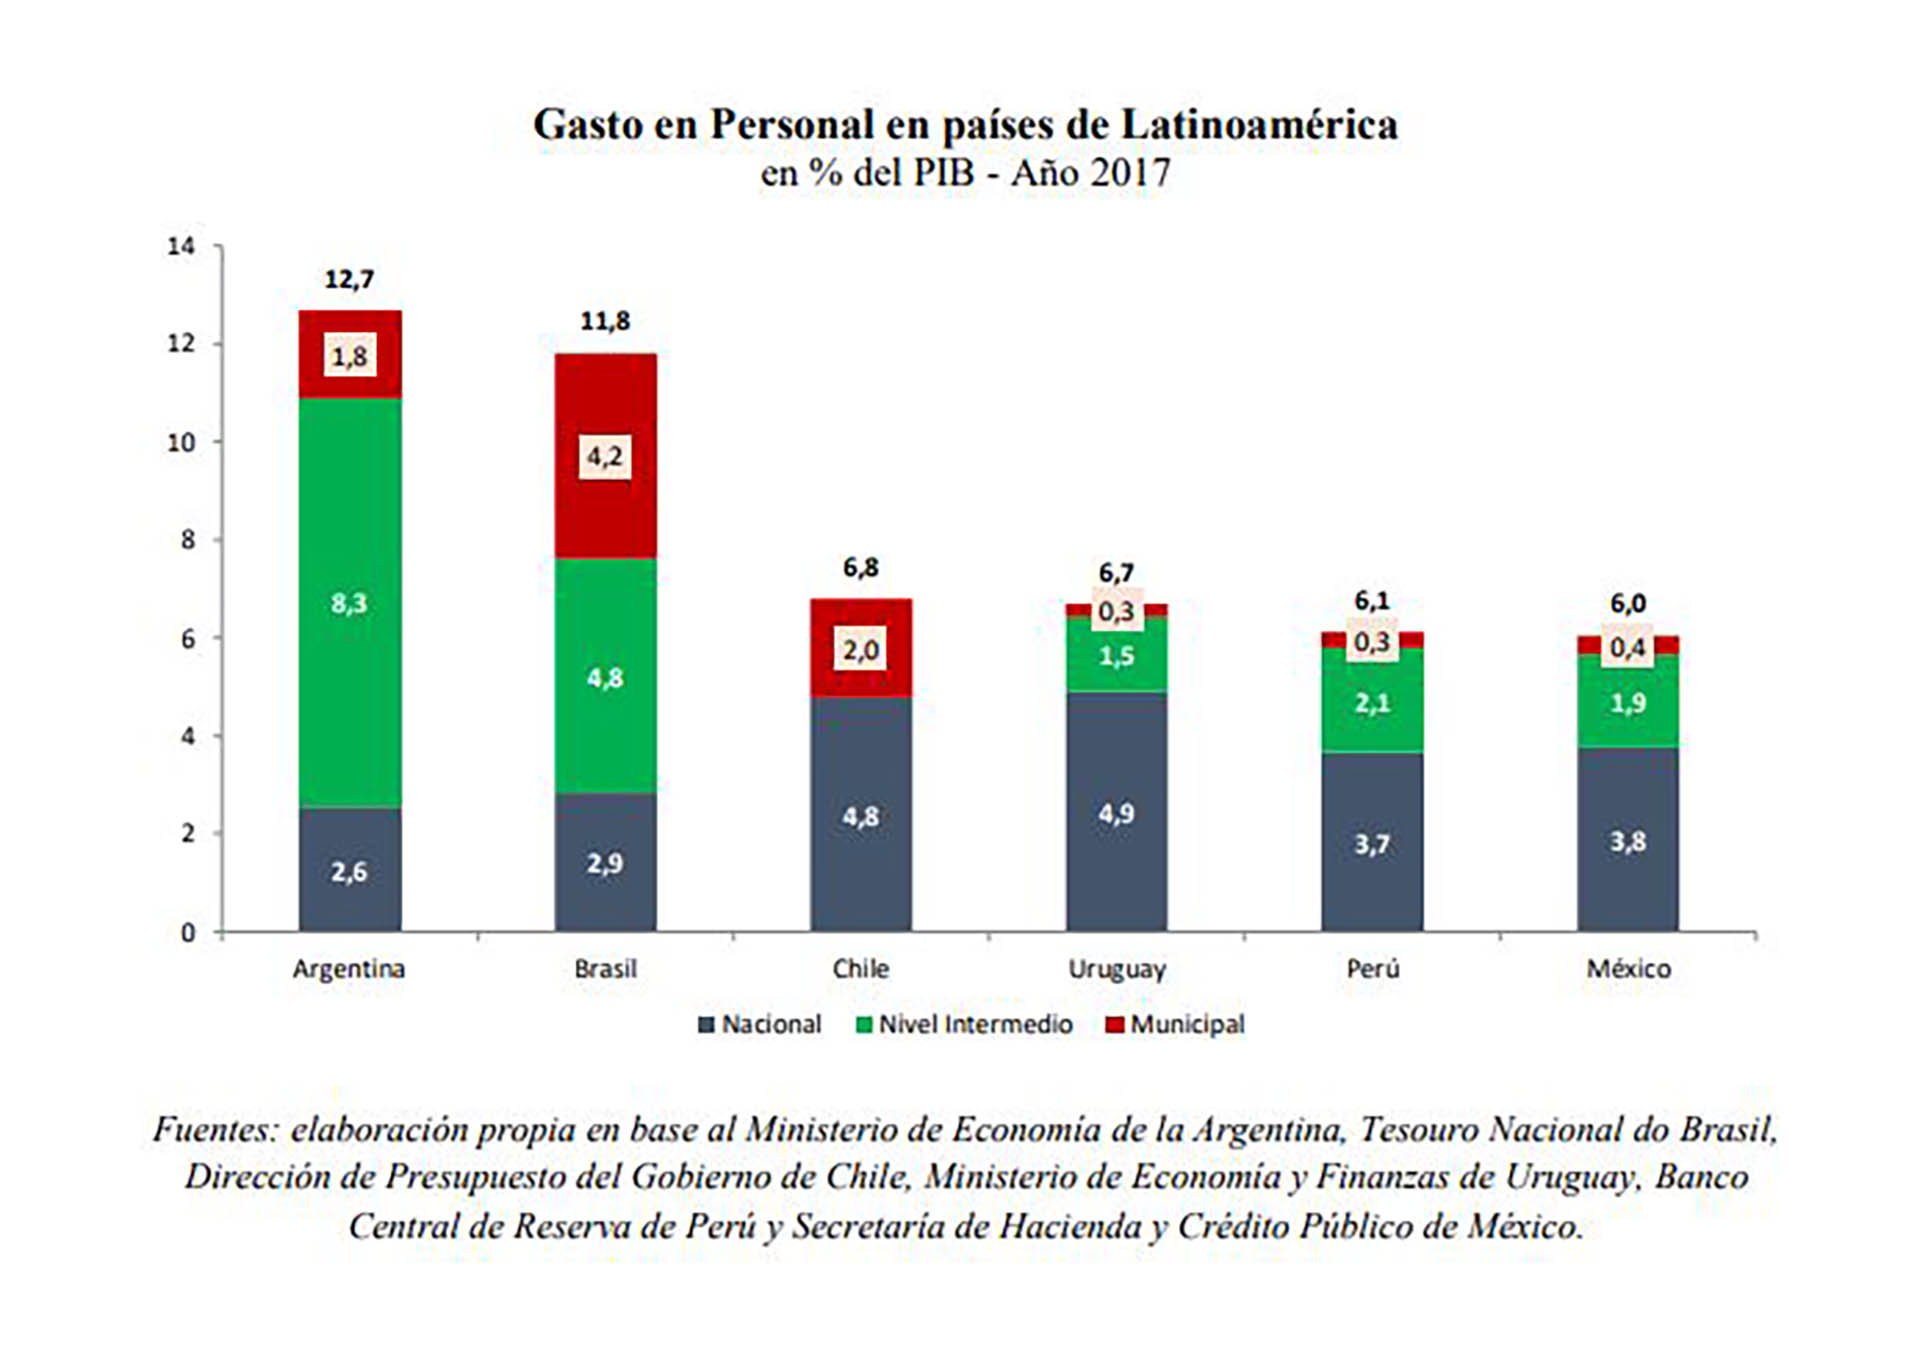 El gasto en personal público de la Argentina, en porcentaje del PBI, duplica el promedio regional